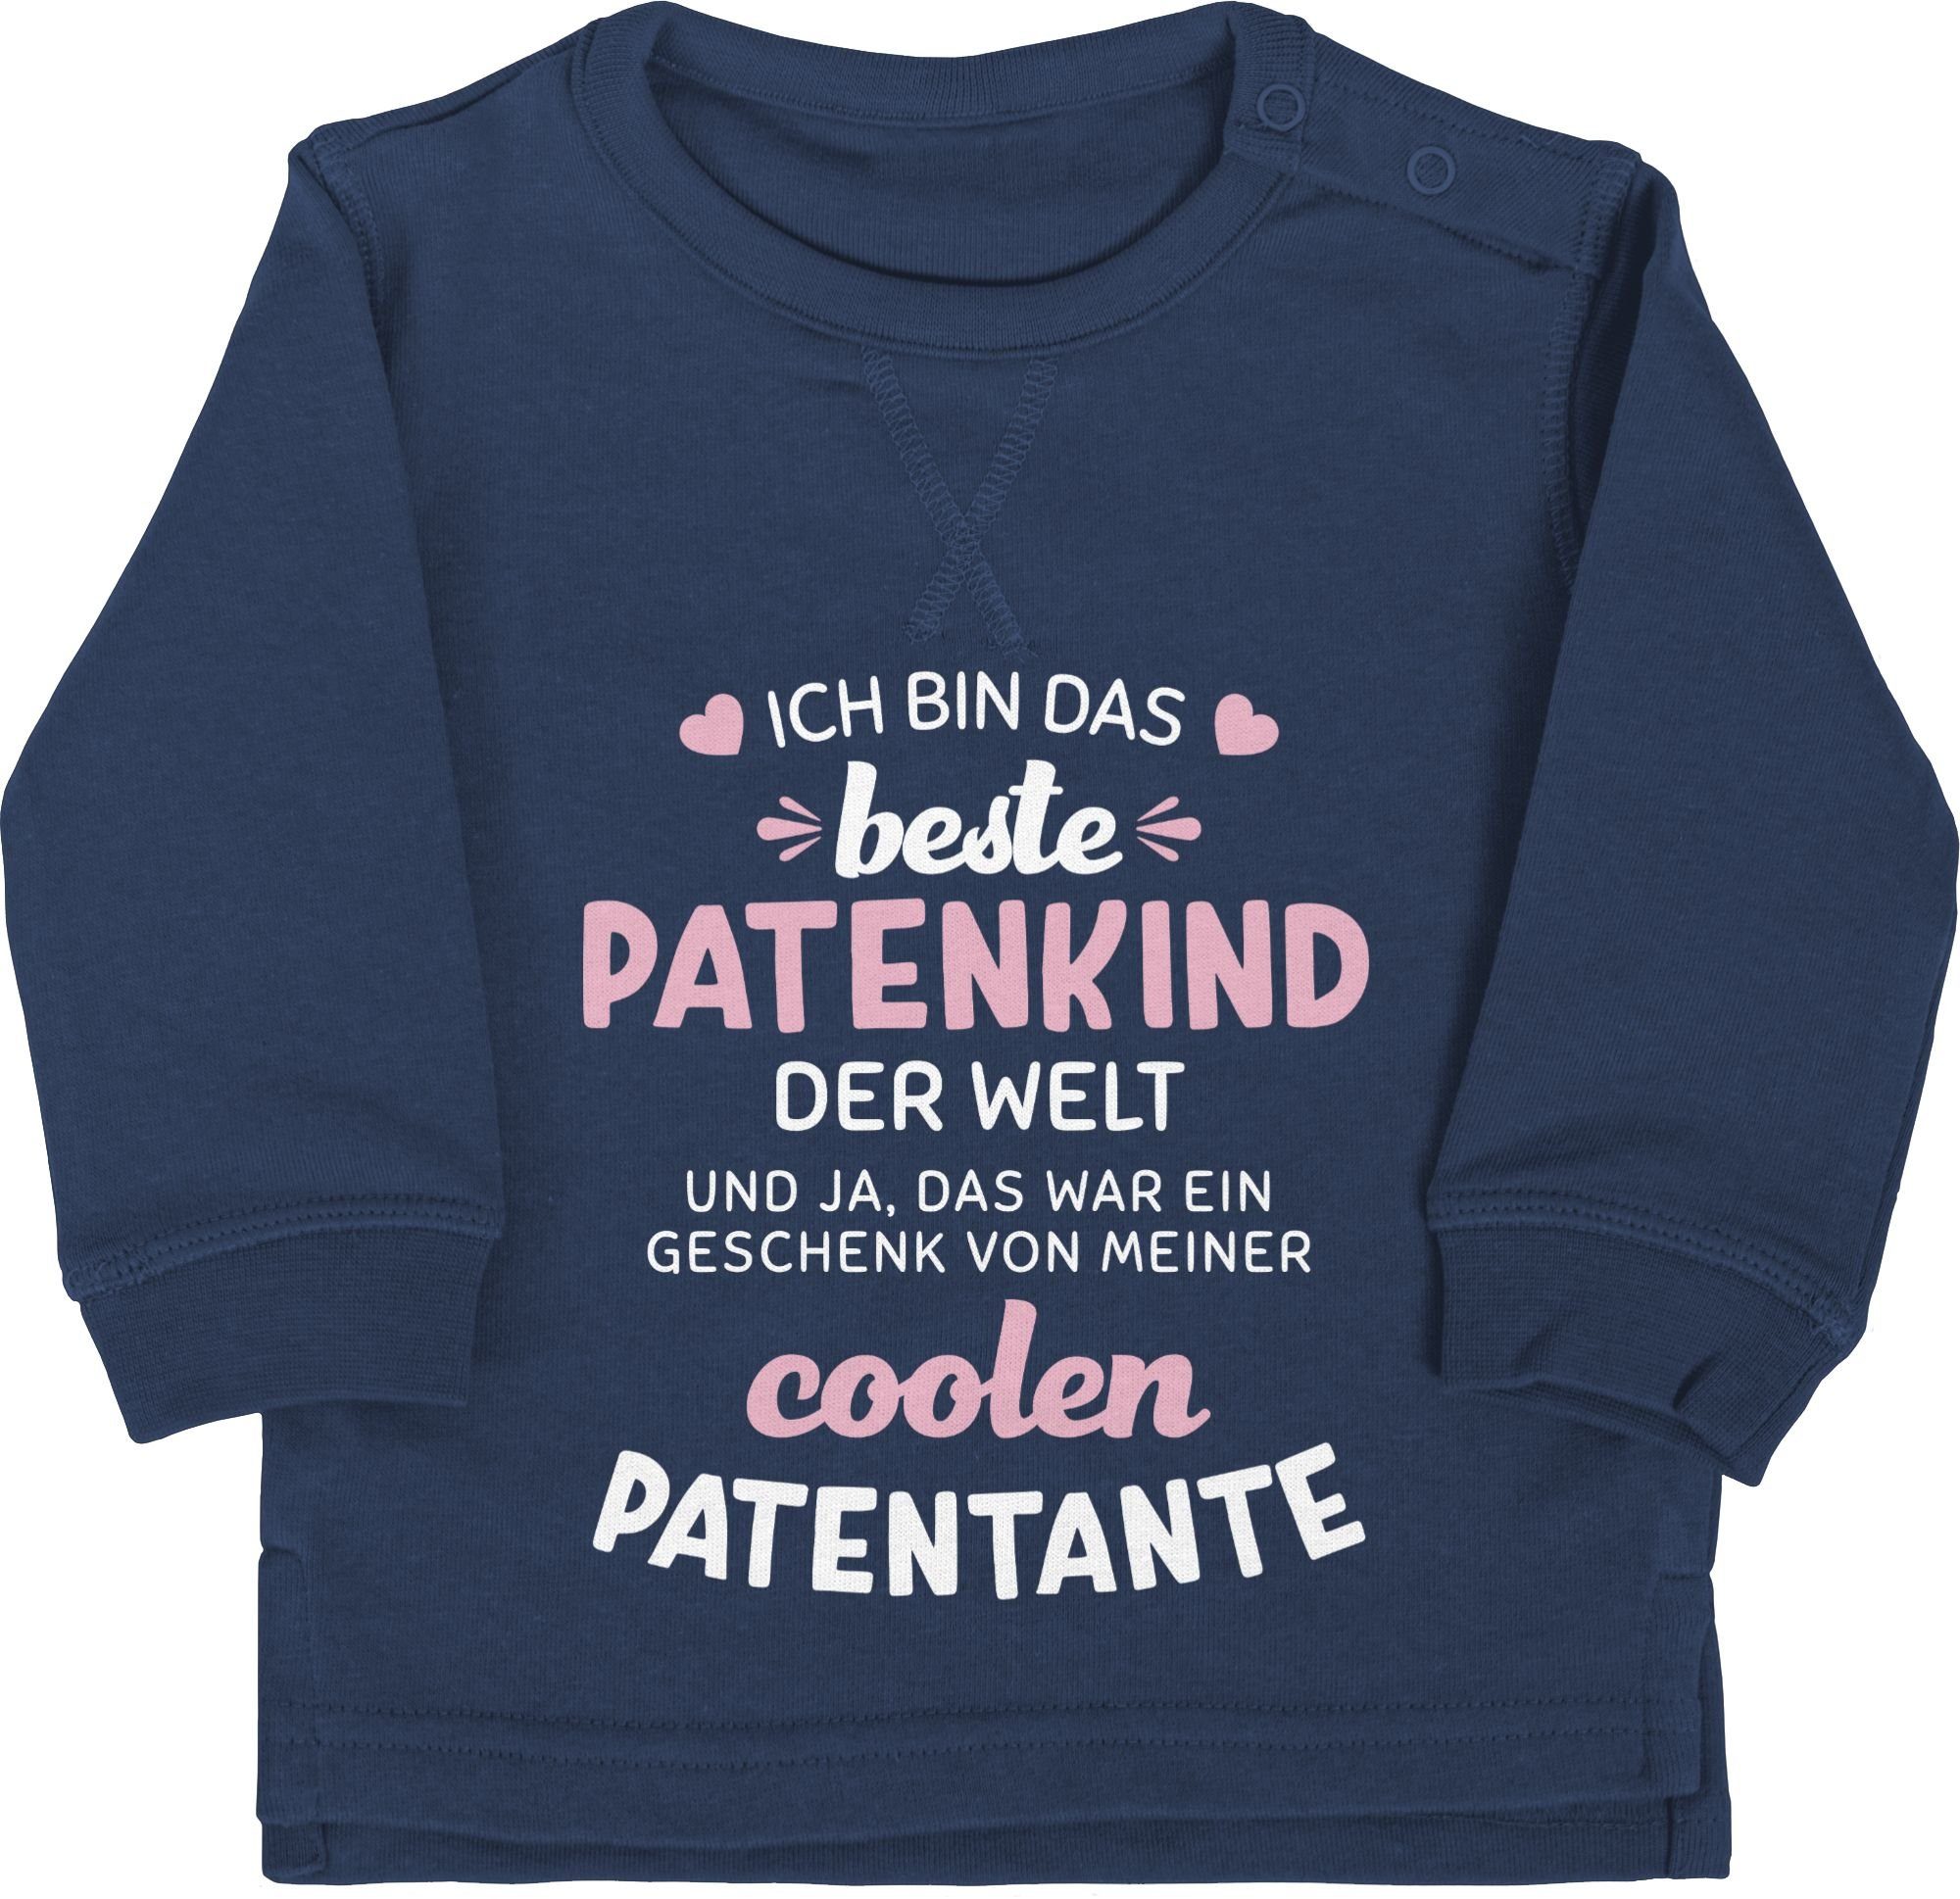 der Patentante das Welt Baby 1 Ich Shirtracer bin Blau Patenkind Sweatshirt beste Navy weiß/rosa